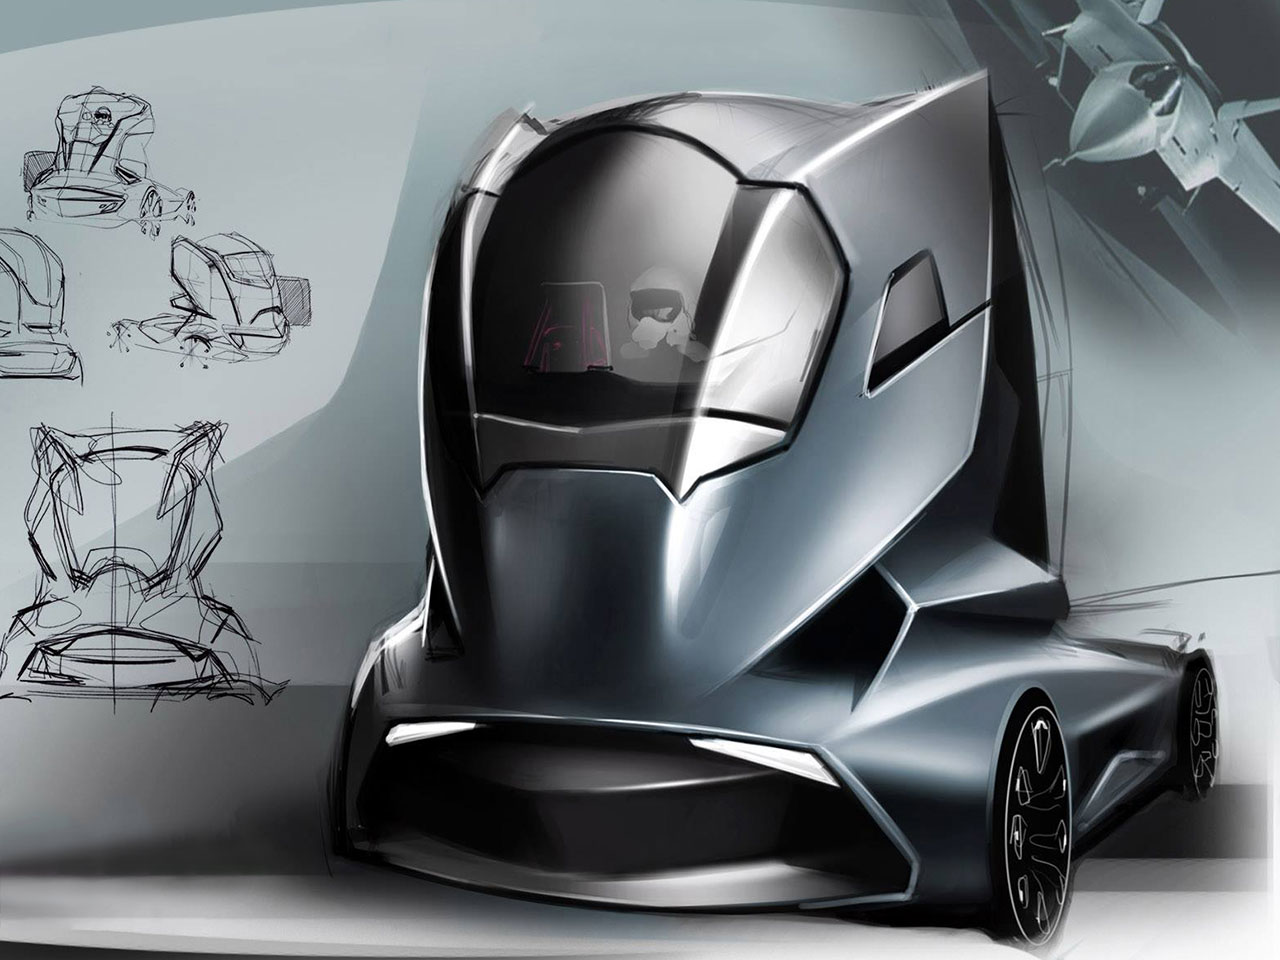 Truck Design Concept by Hermann Seitz